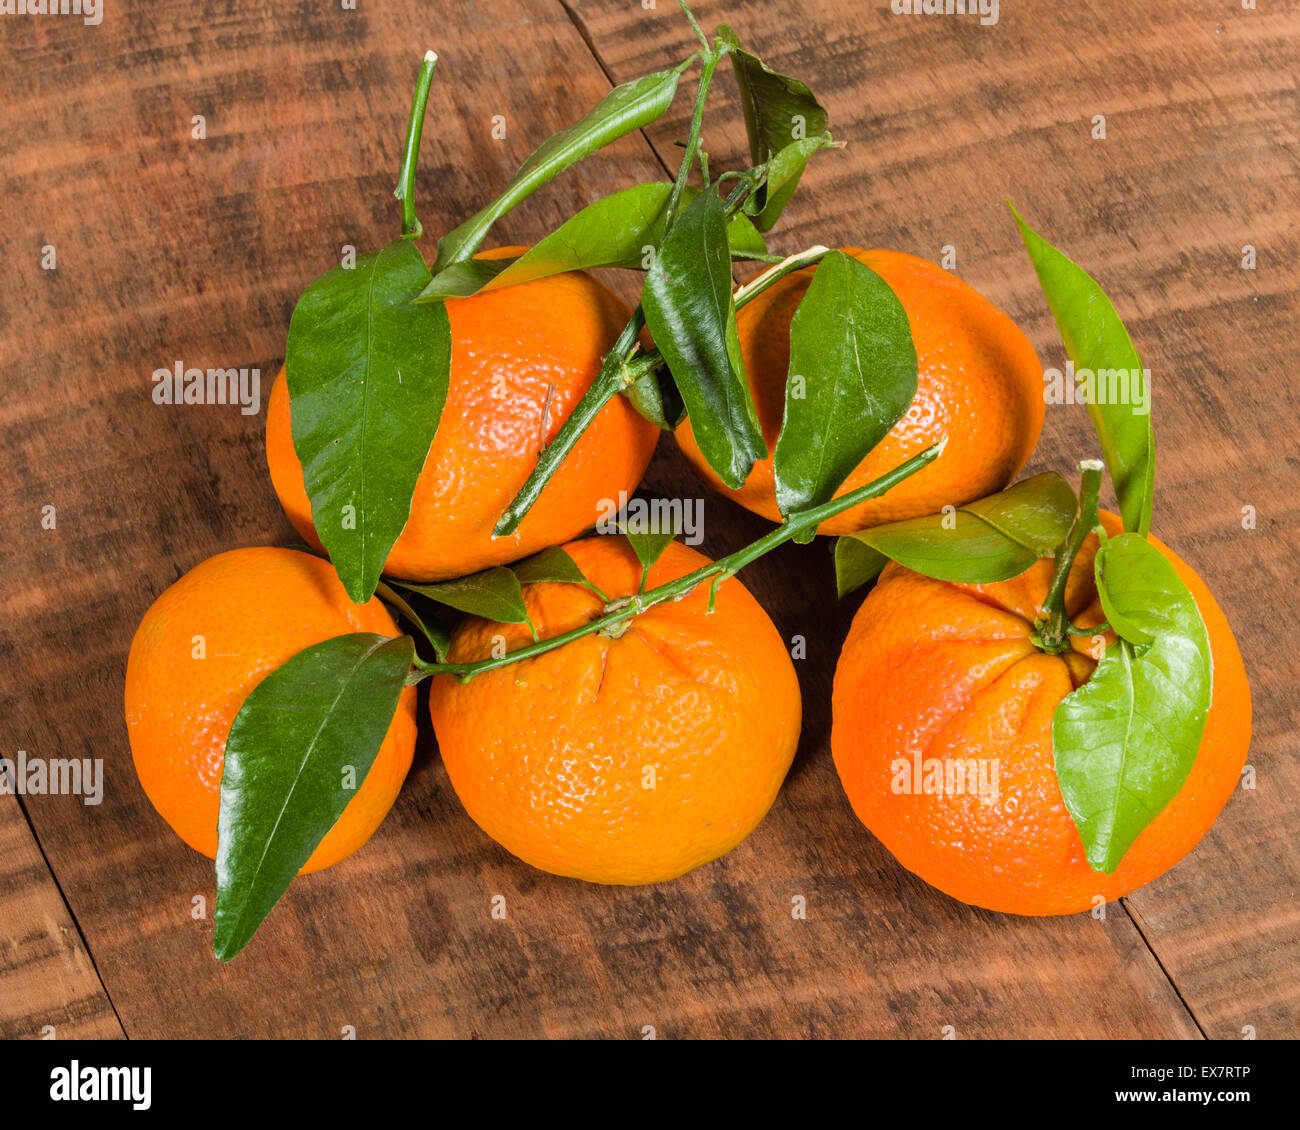 Tangelos madura con frescas hojas verdes sobre la mesa de madera Foto de stock